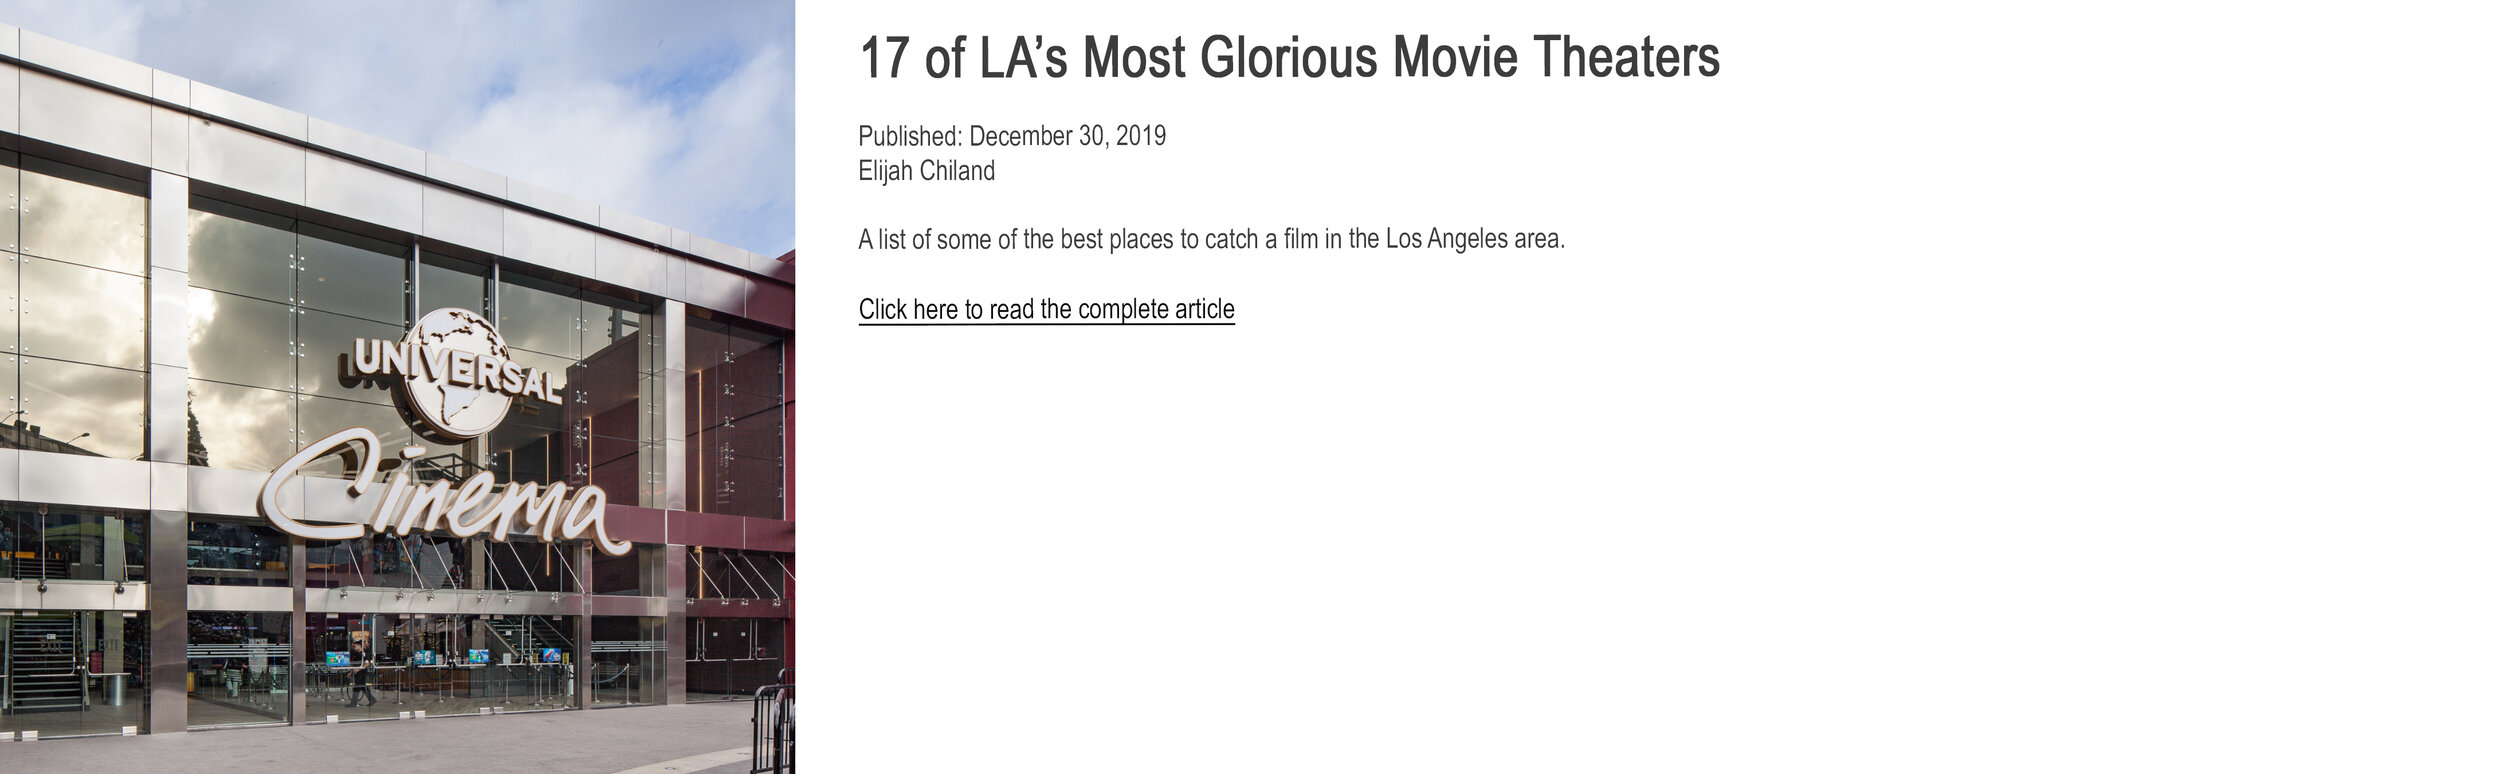 LA Top 17 Cinemas.jpg